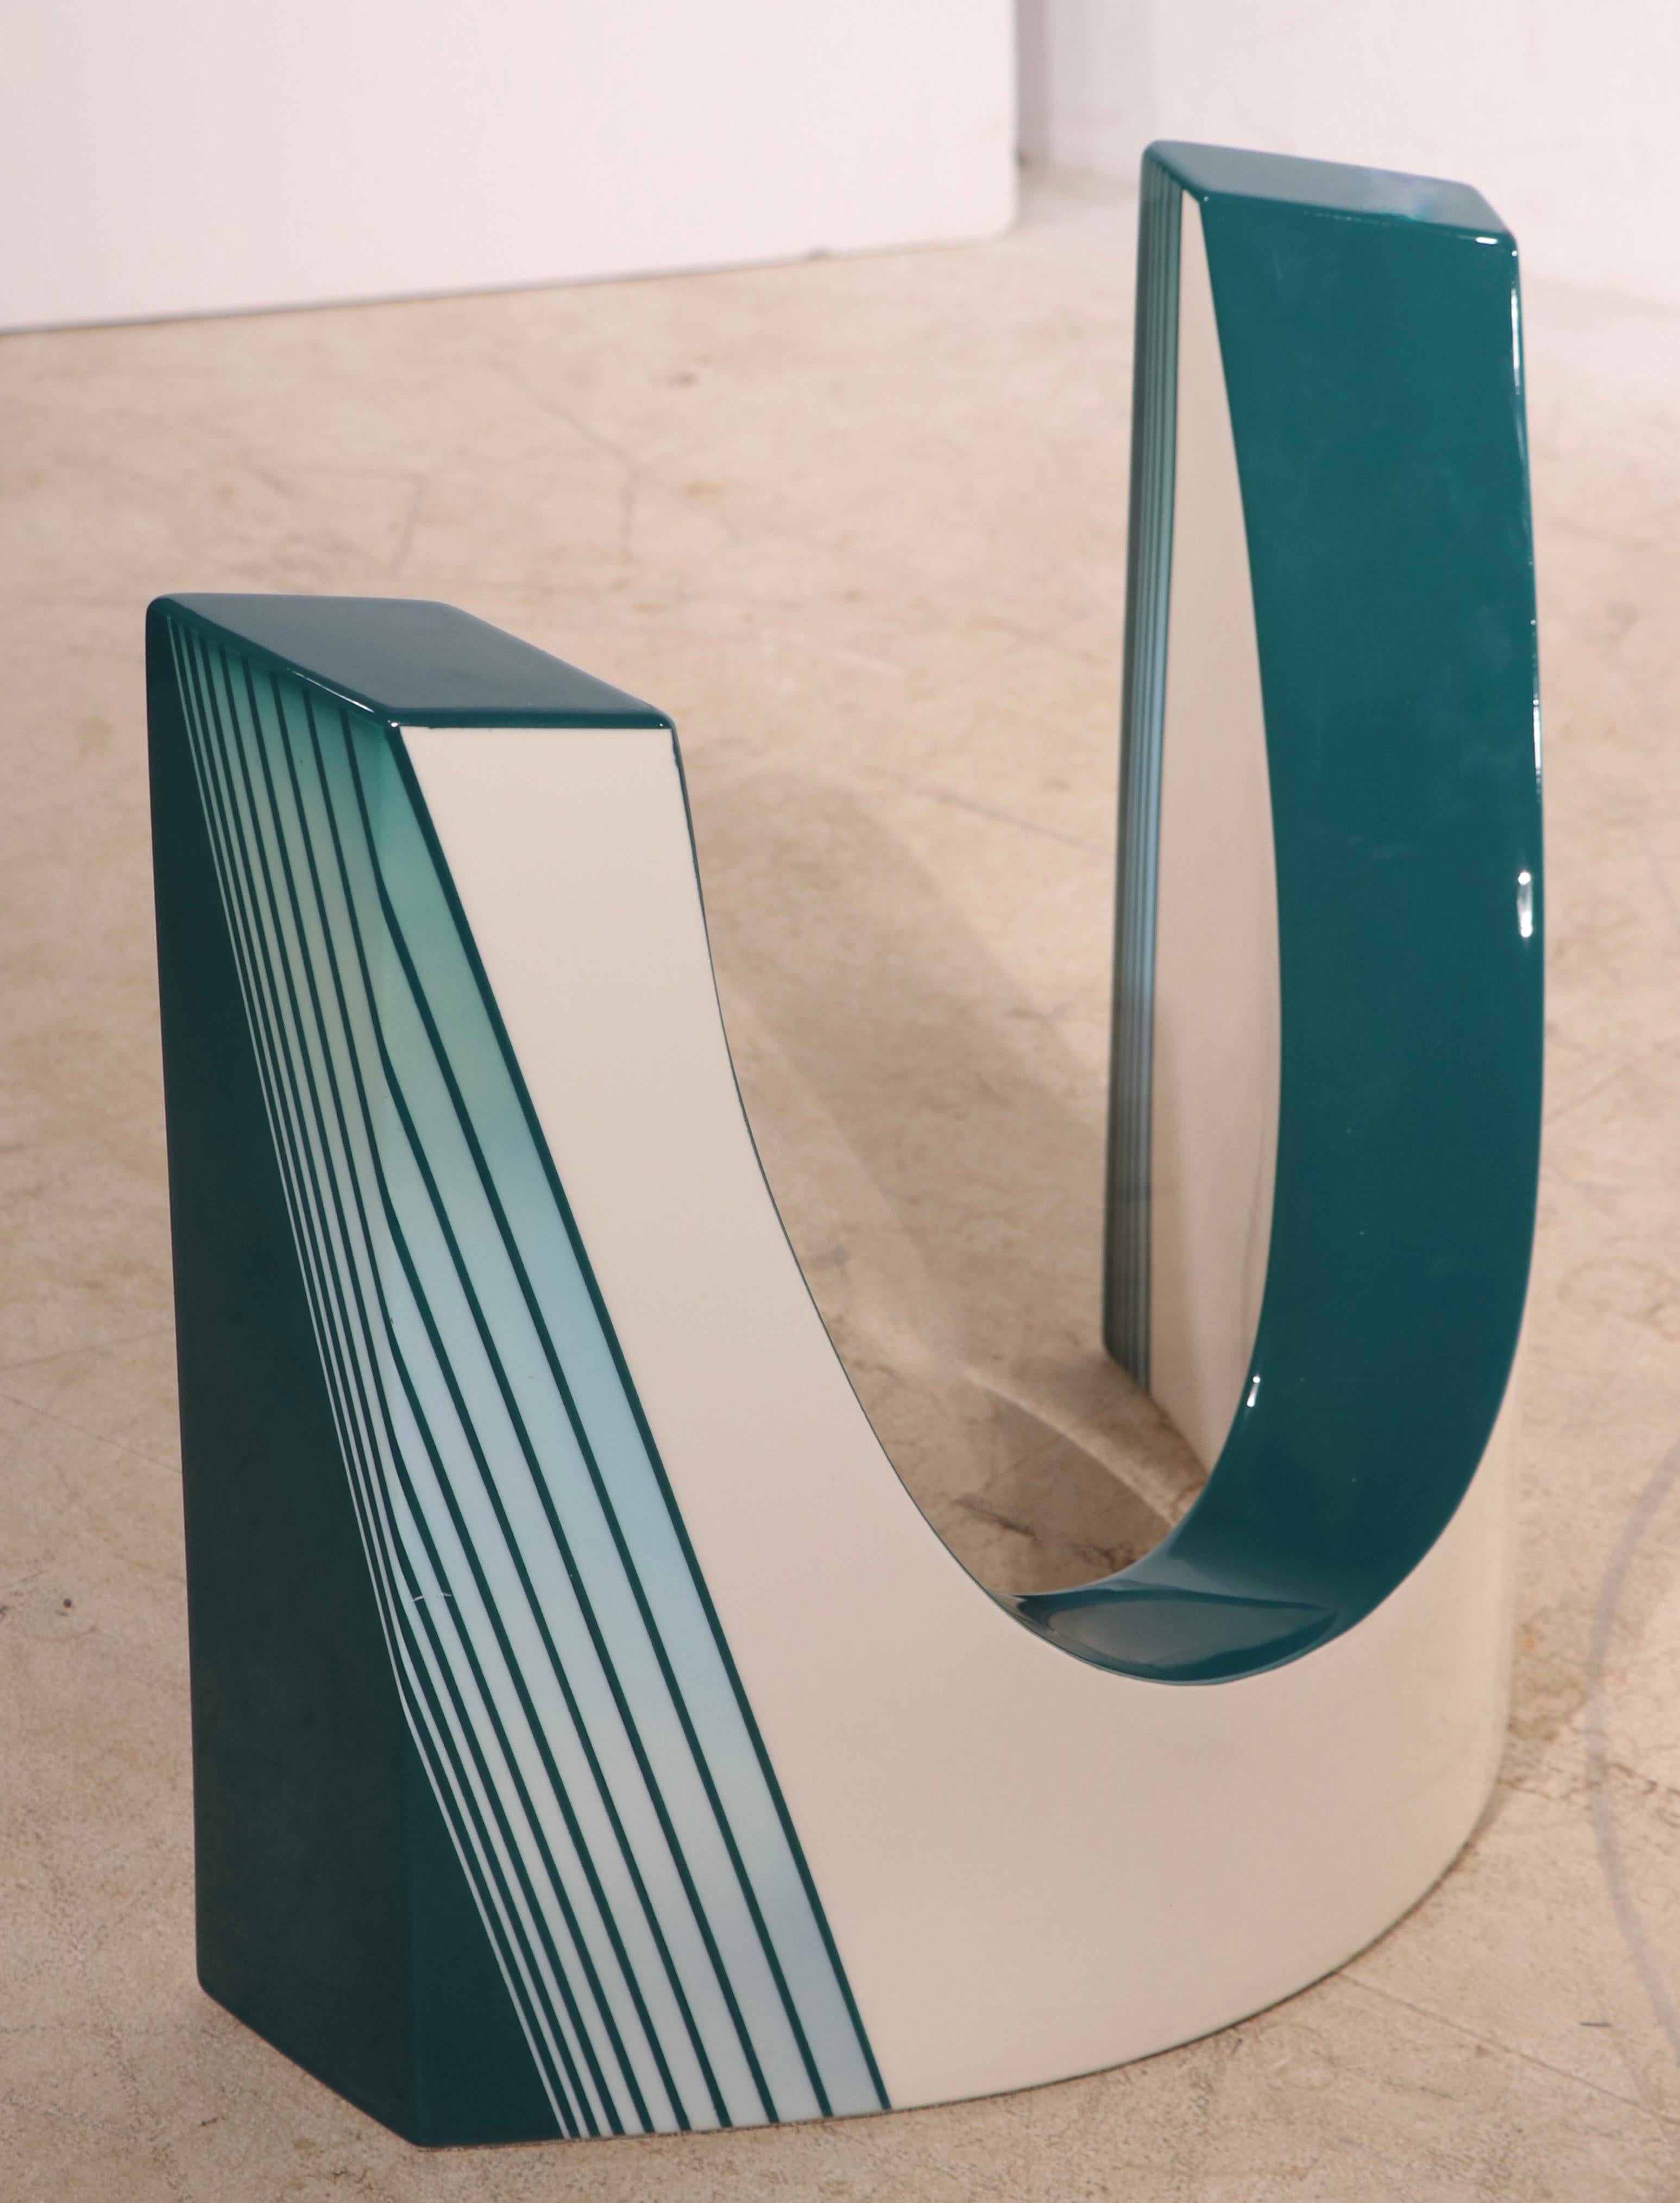 Intrigante table basse post-moderne de style Memphis, dont les bases courbes opposées, en métal émaillé turquoise et blanc, soutiennent l'épais plateau en verre biseauté (0,75 po). La table est en très bon état, originale, propre et prête à